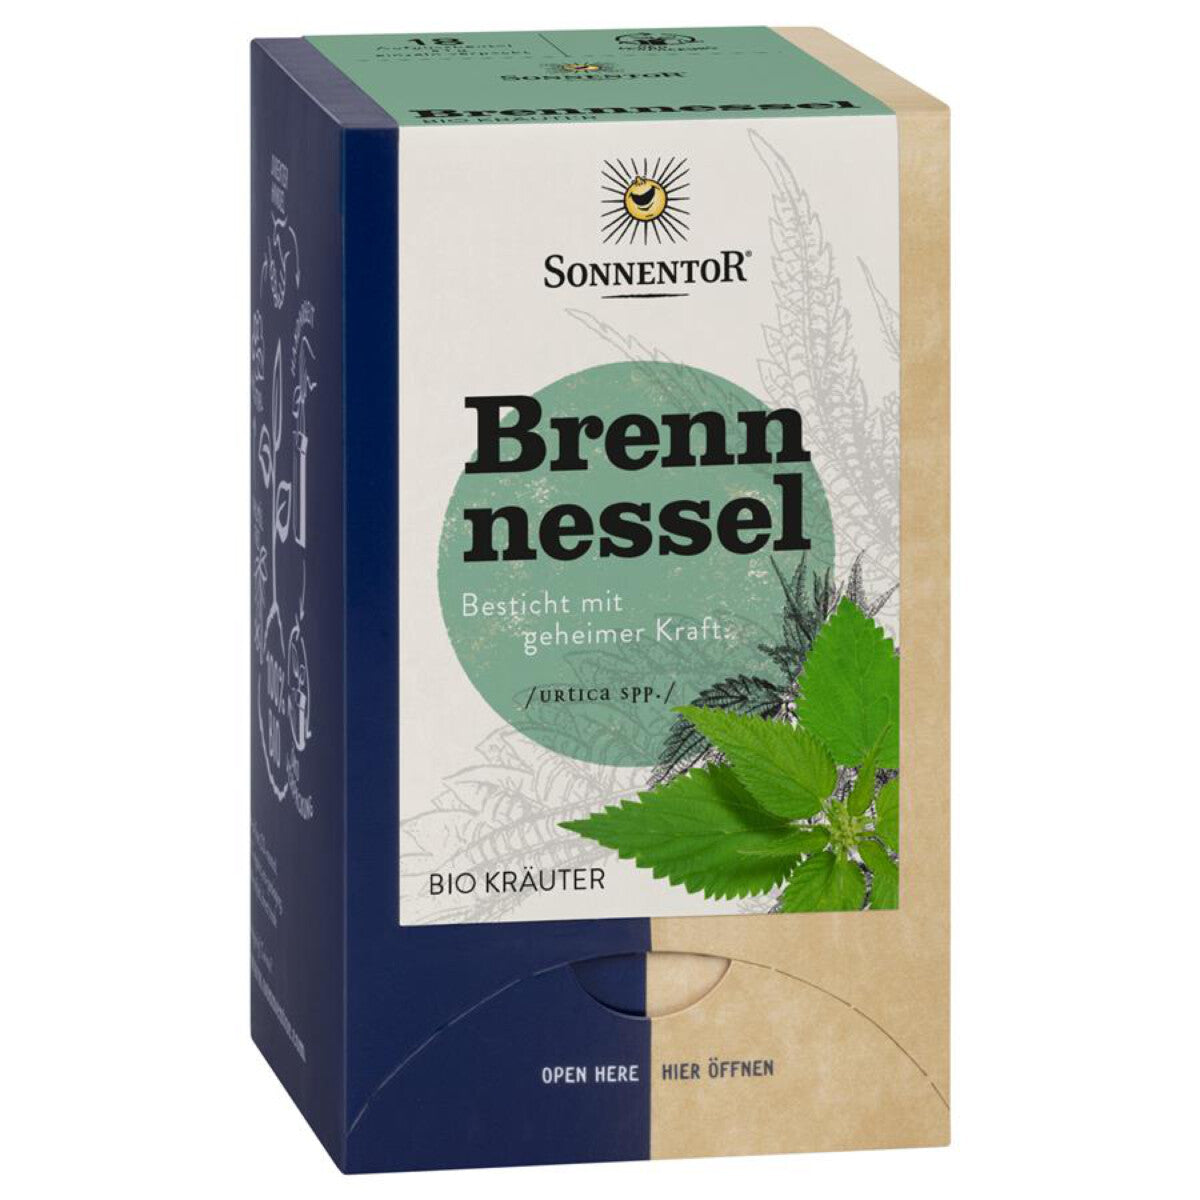 SONNENTOR Brennnessel Tee Beutel - 18 Btl.